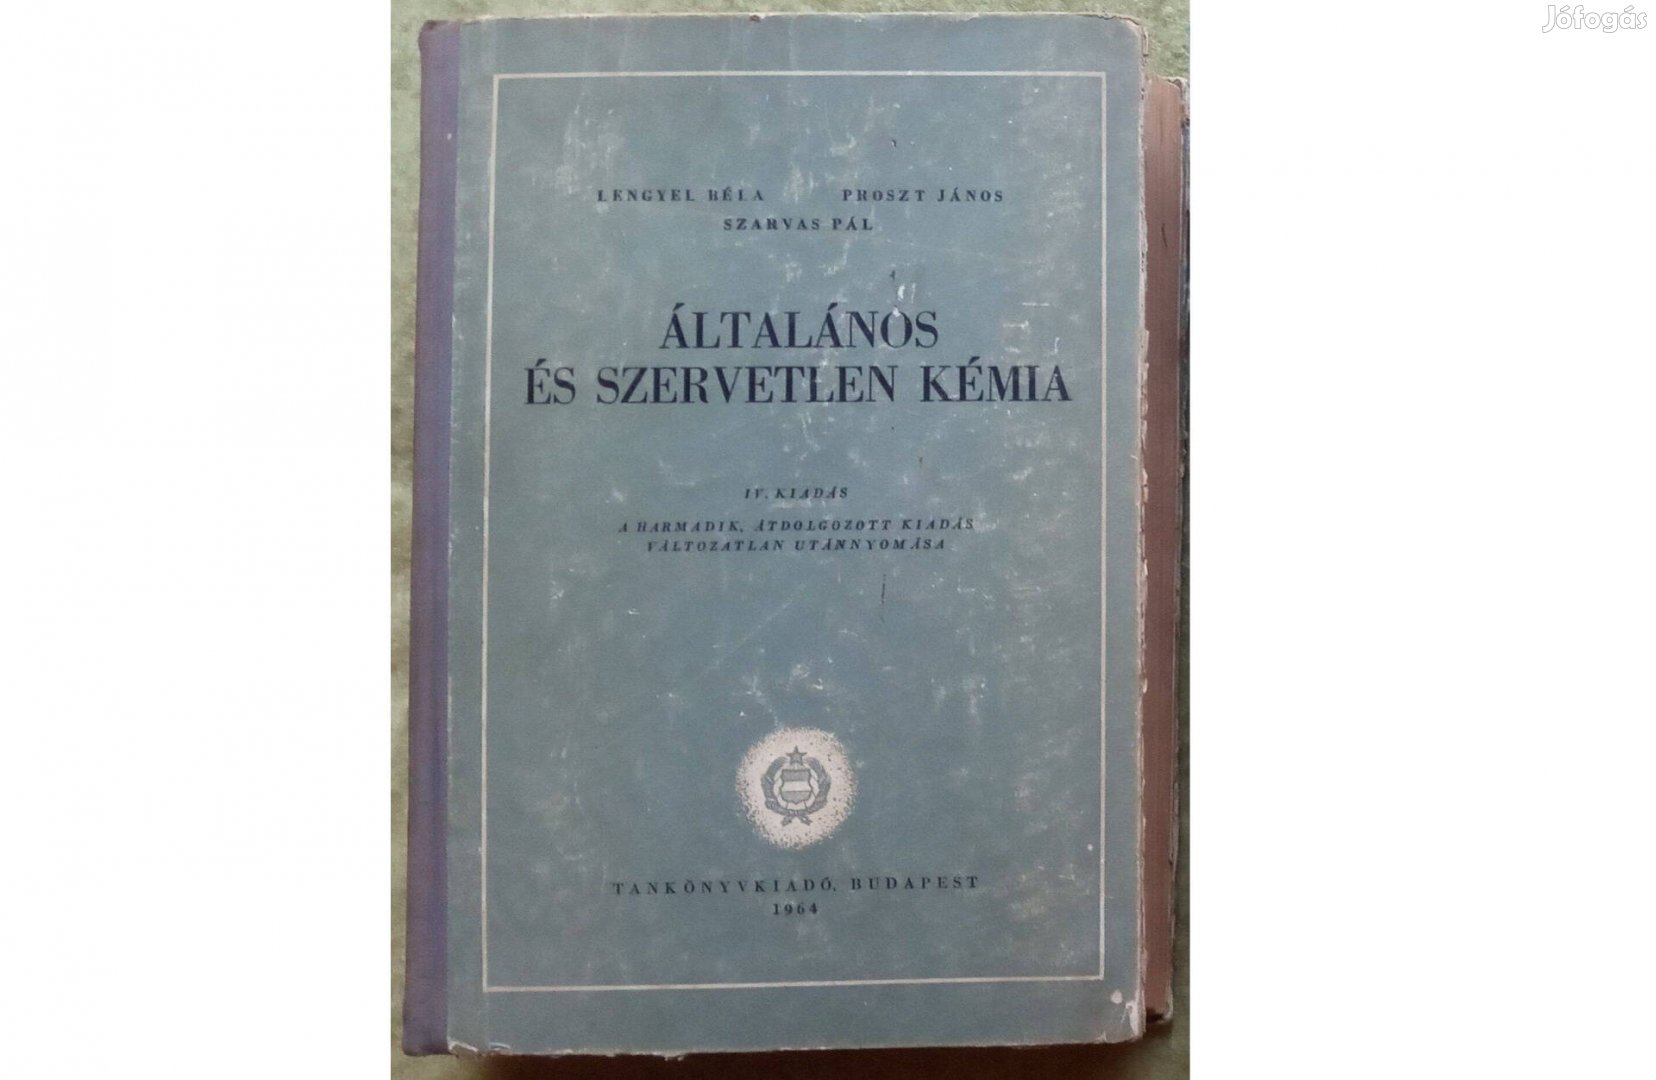 Lengyel, Proszt, Szarvas: Általános és szervetlen kémia (1964)